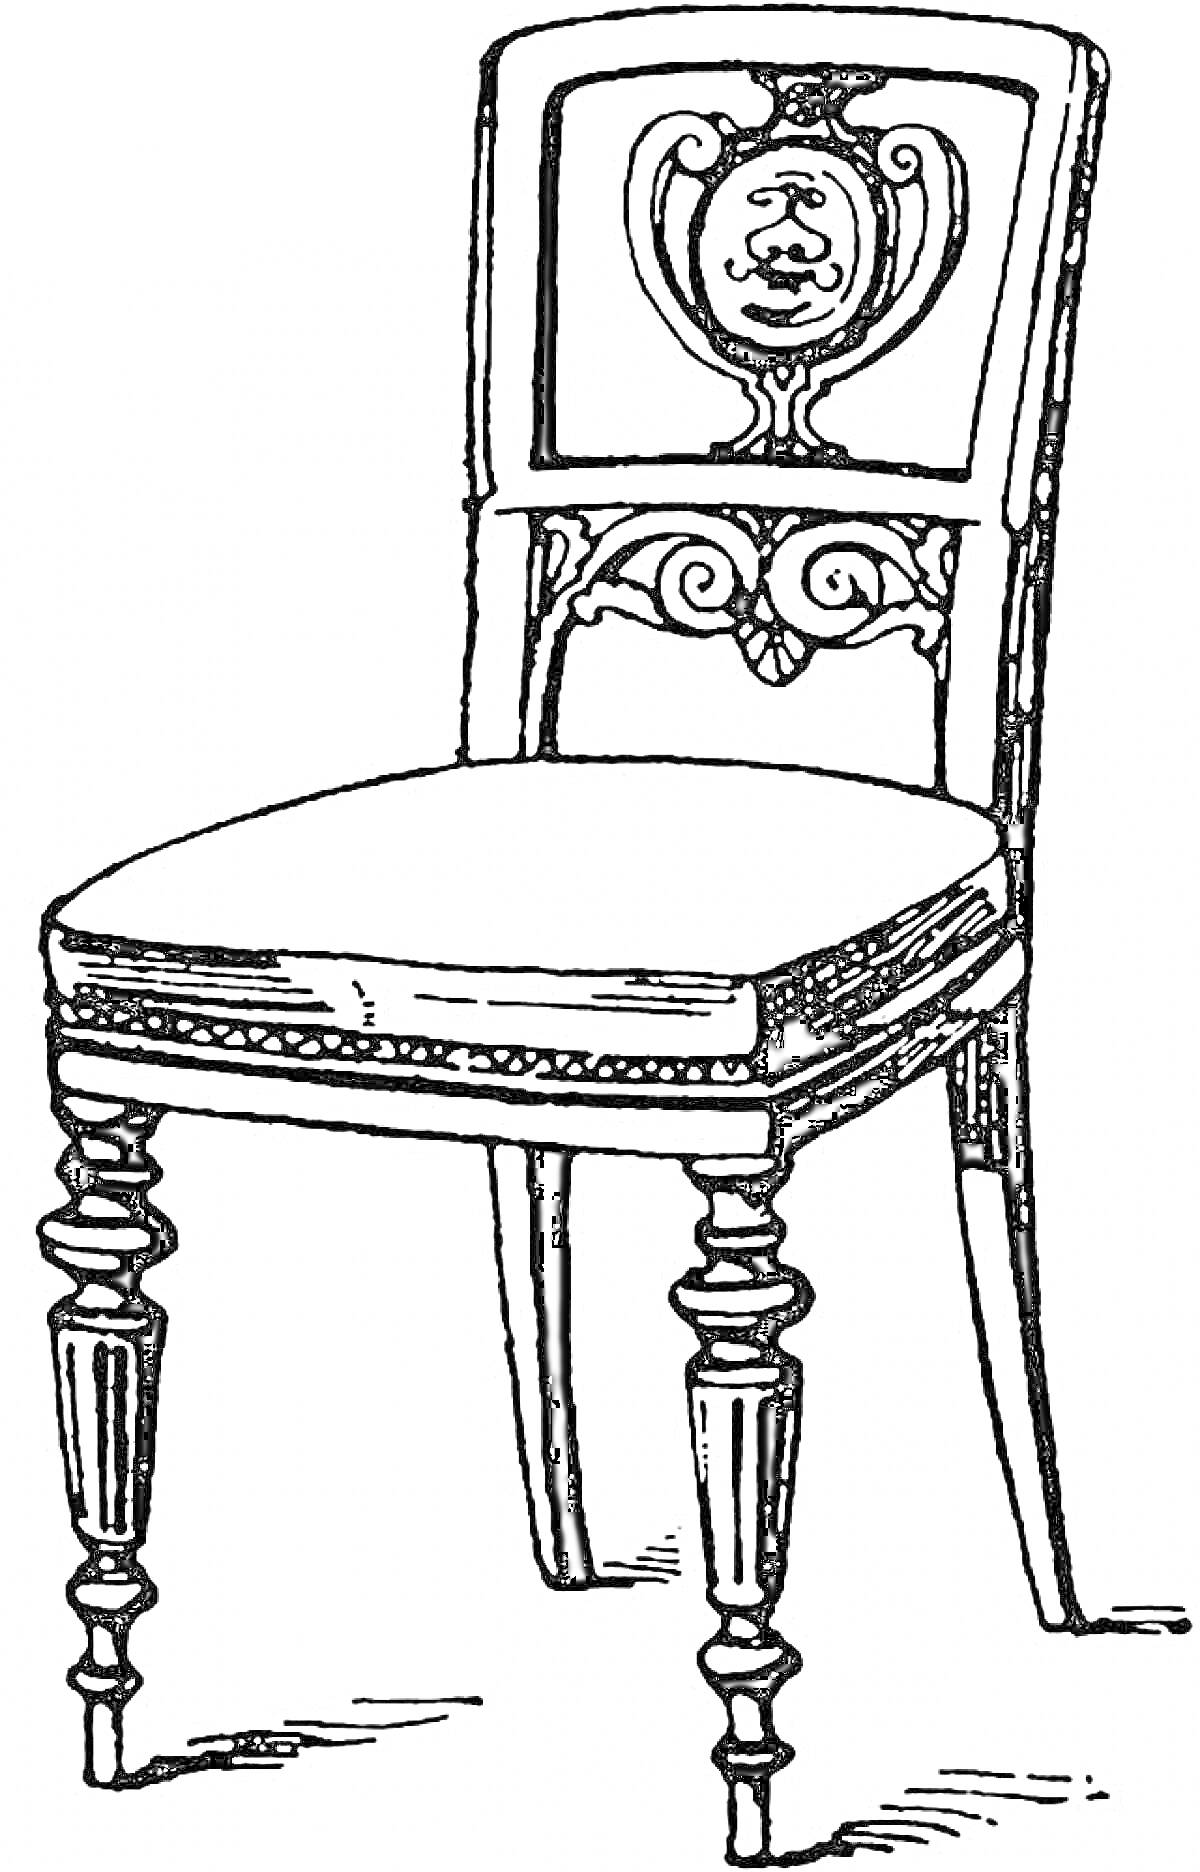 Кресло с резным узором и орнаментом на спинке, мягкое сиденье